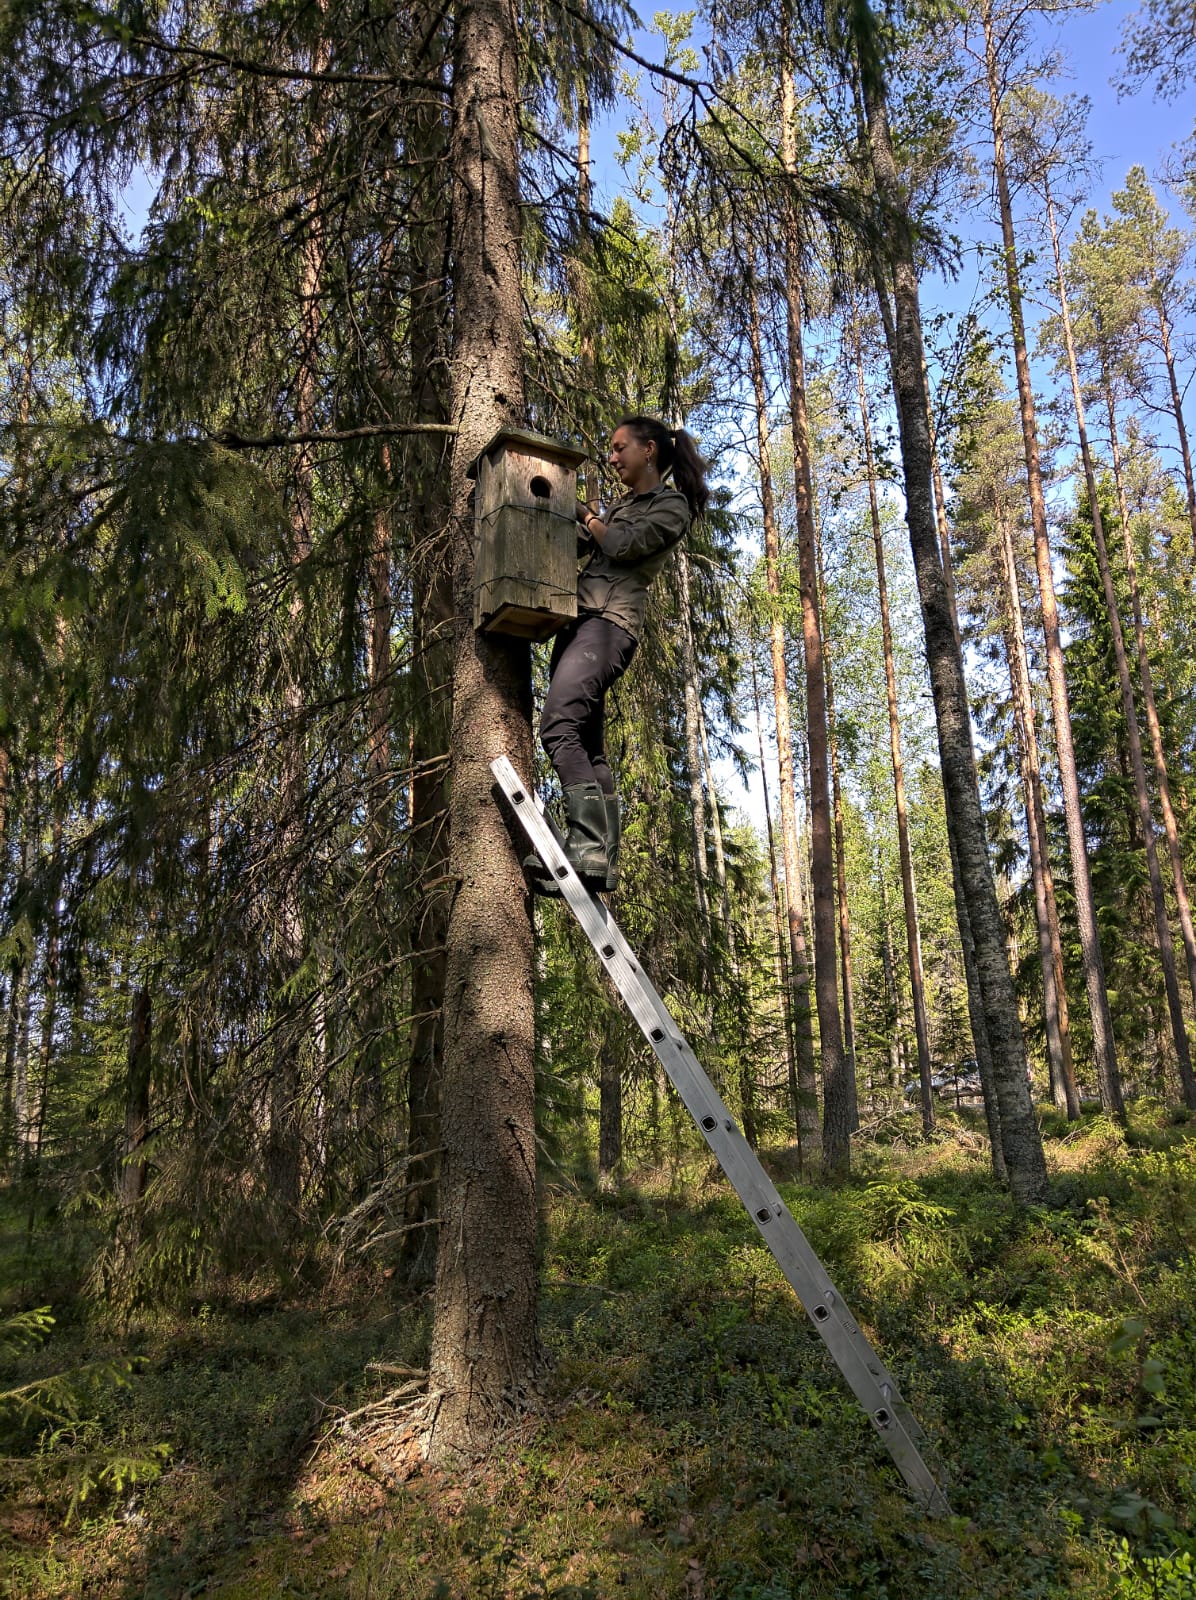 Giulia Masoero kiipeämässä puuhun, jossa on varpuspöllön pönttö.